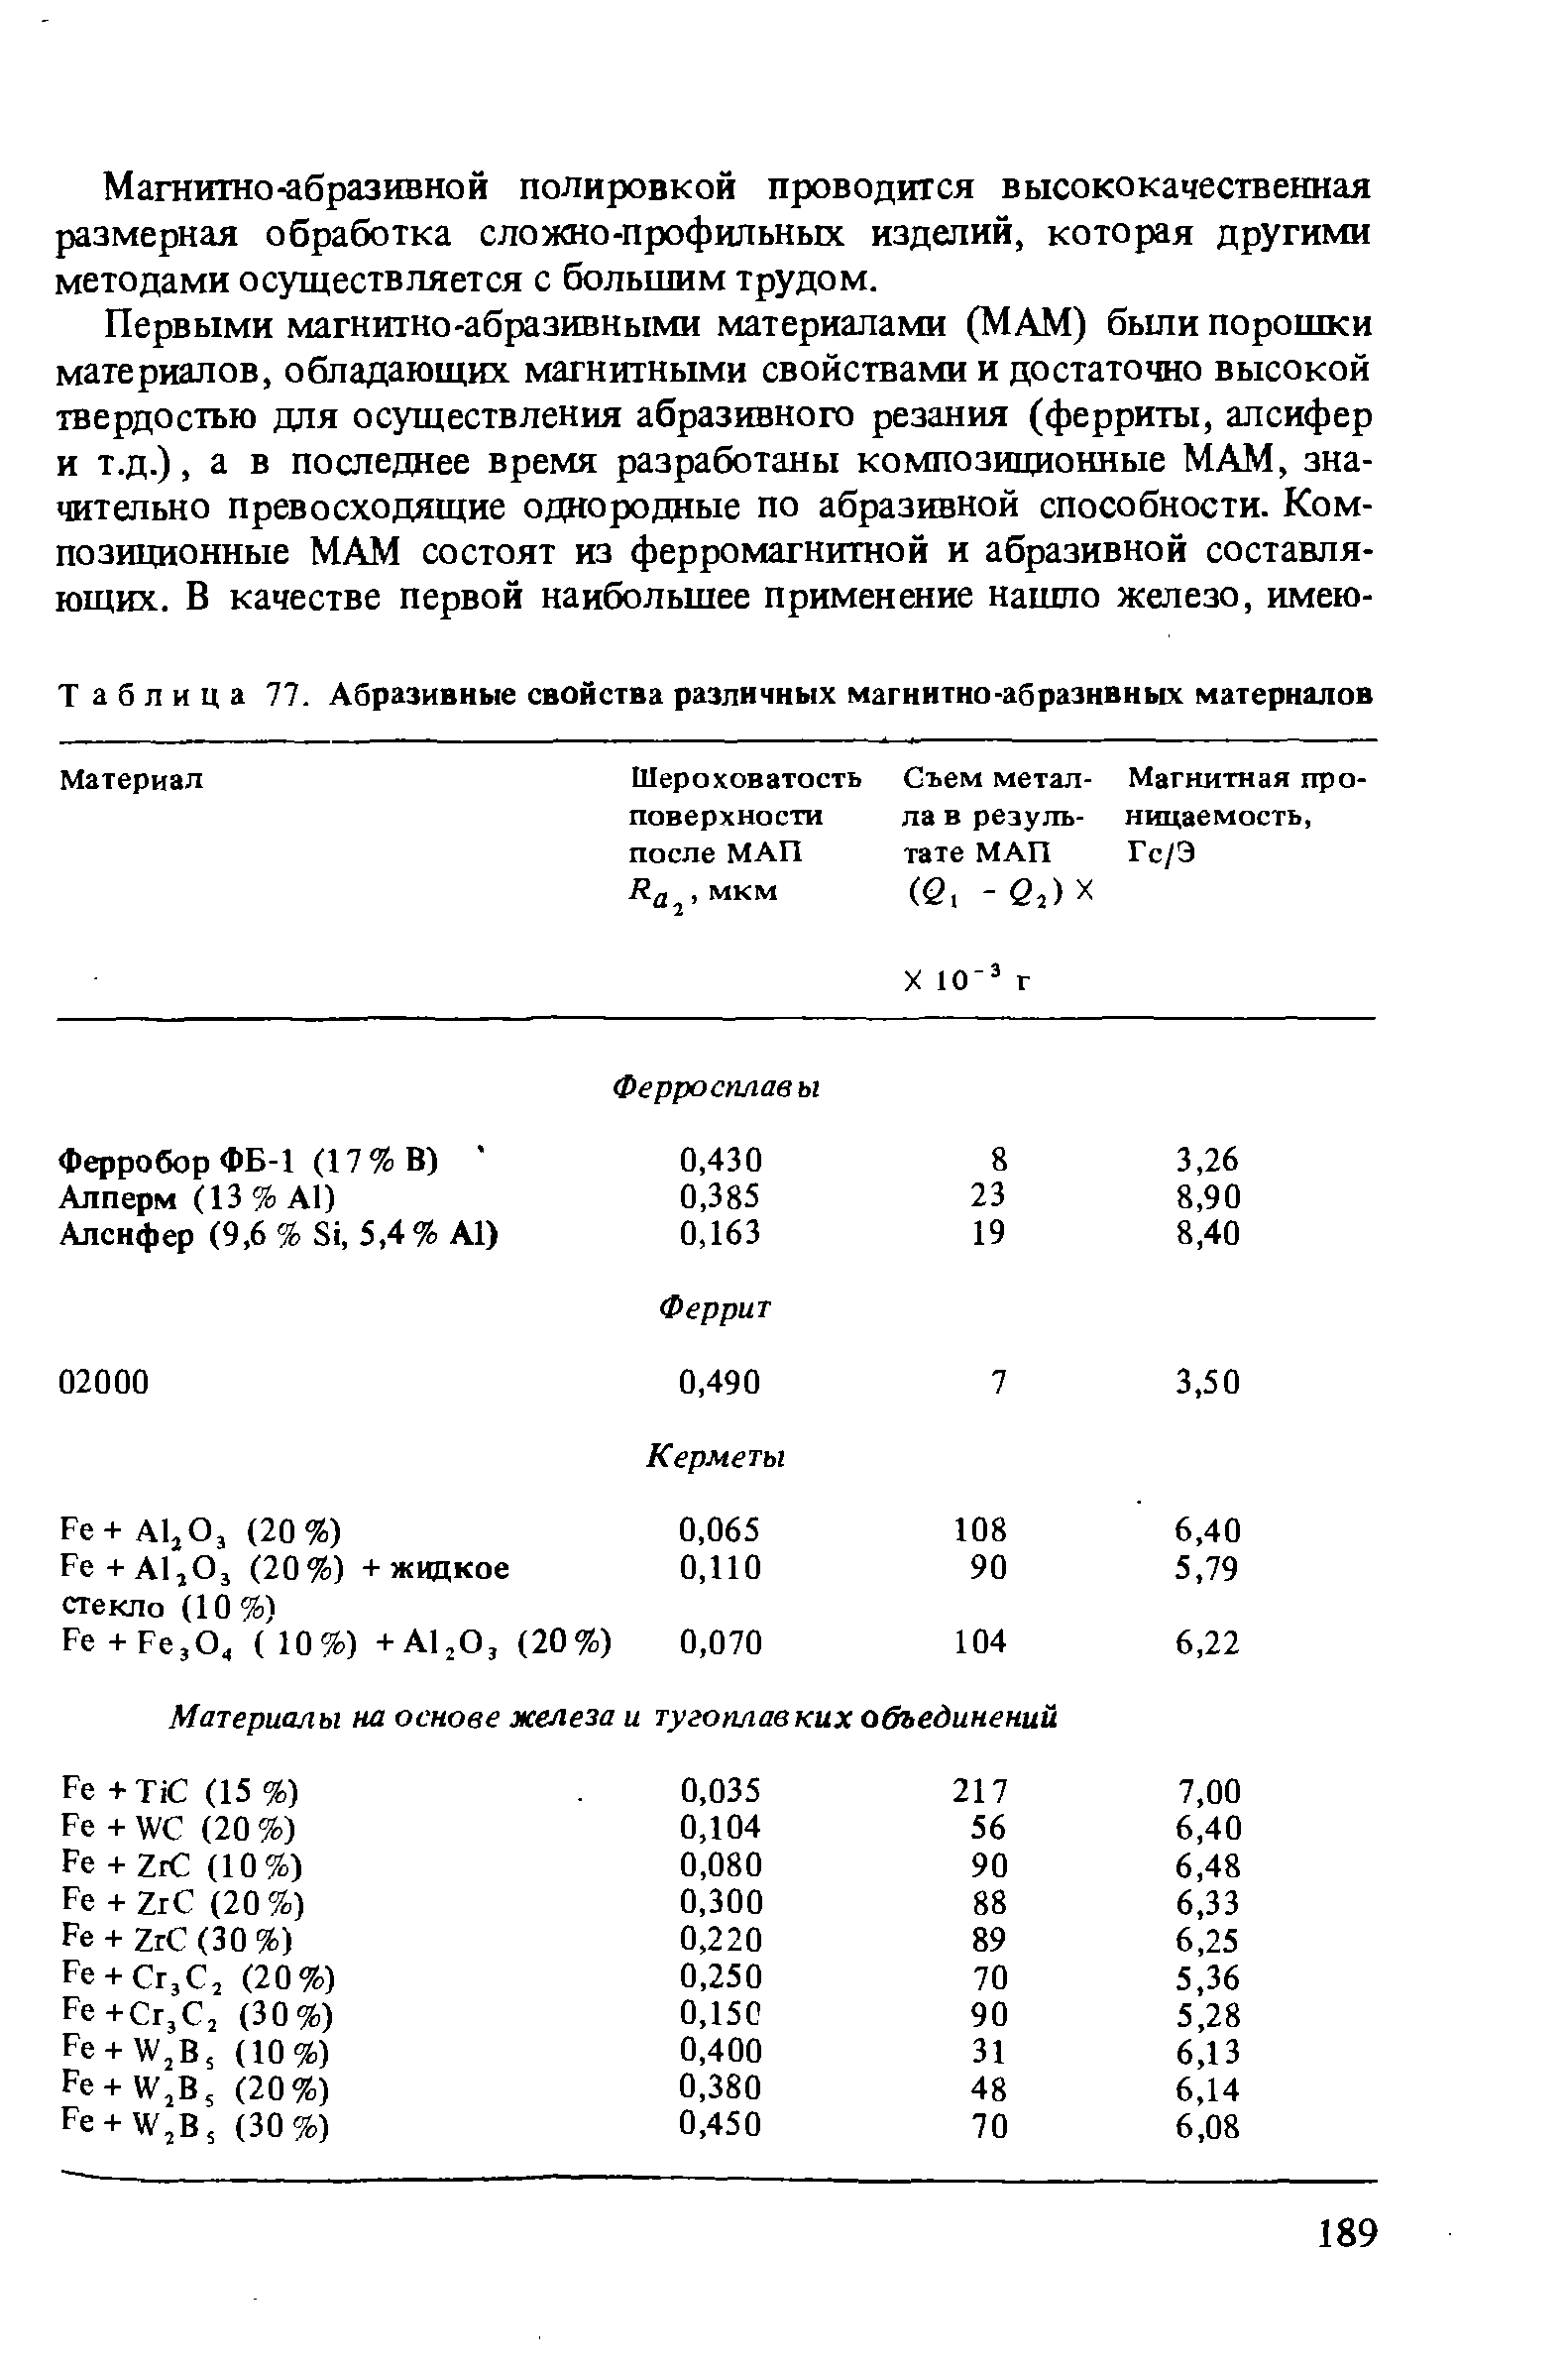 Таблица 77. Абразивные свойства различных магнитно-абразивных материалов
